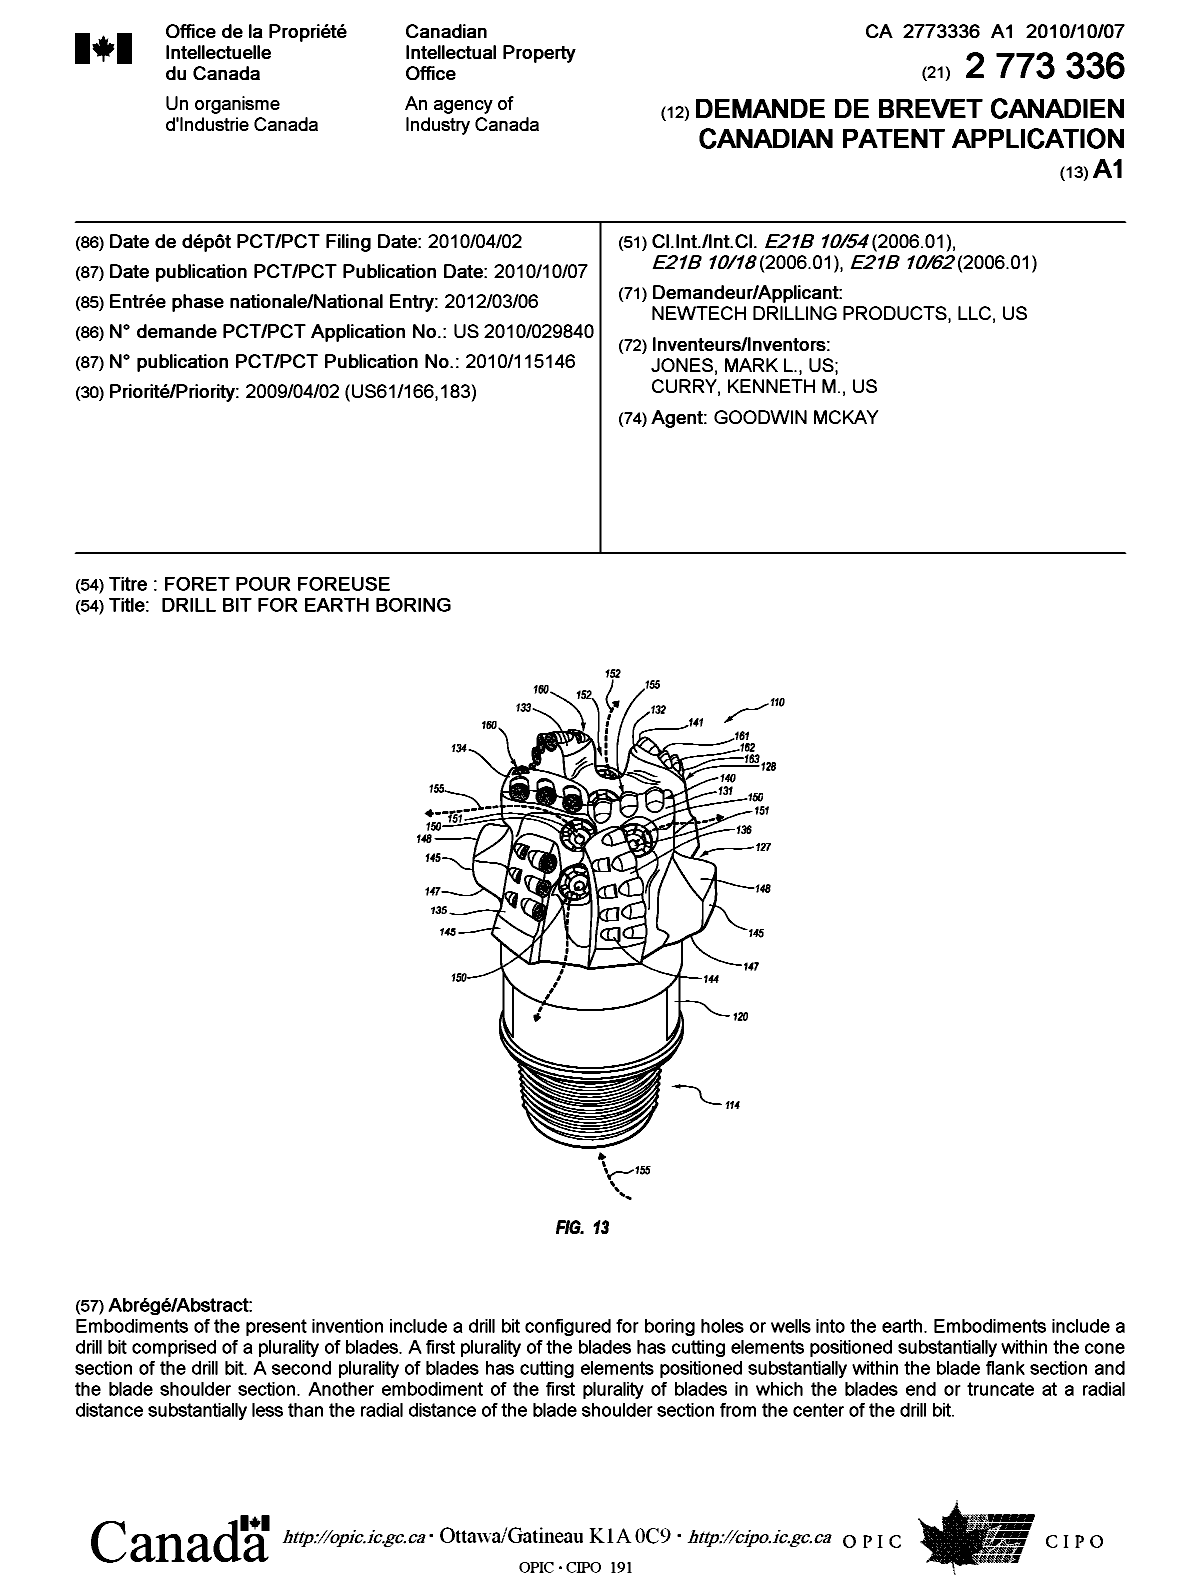 Document de brevet canadien 2773336. Page couverture 20120511. Image 1 de 1